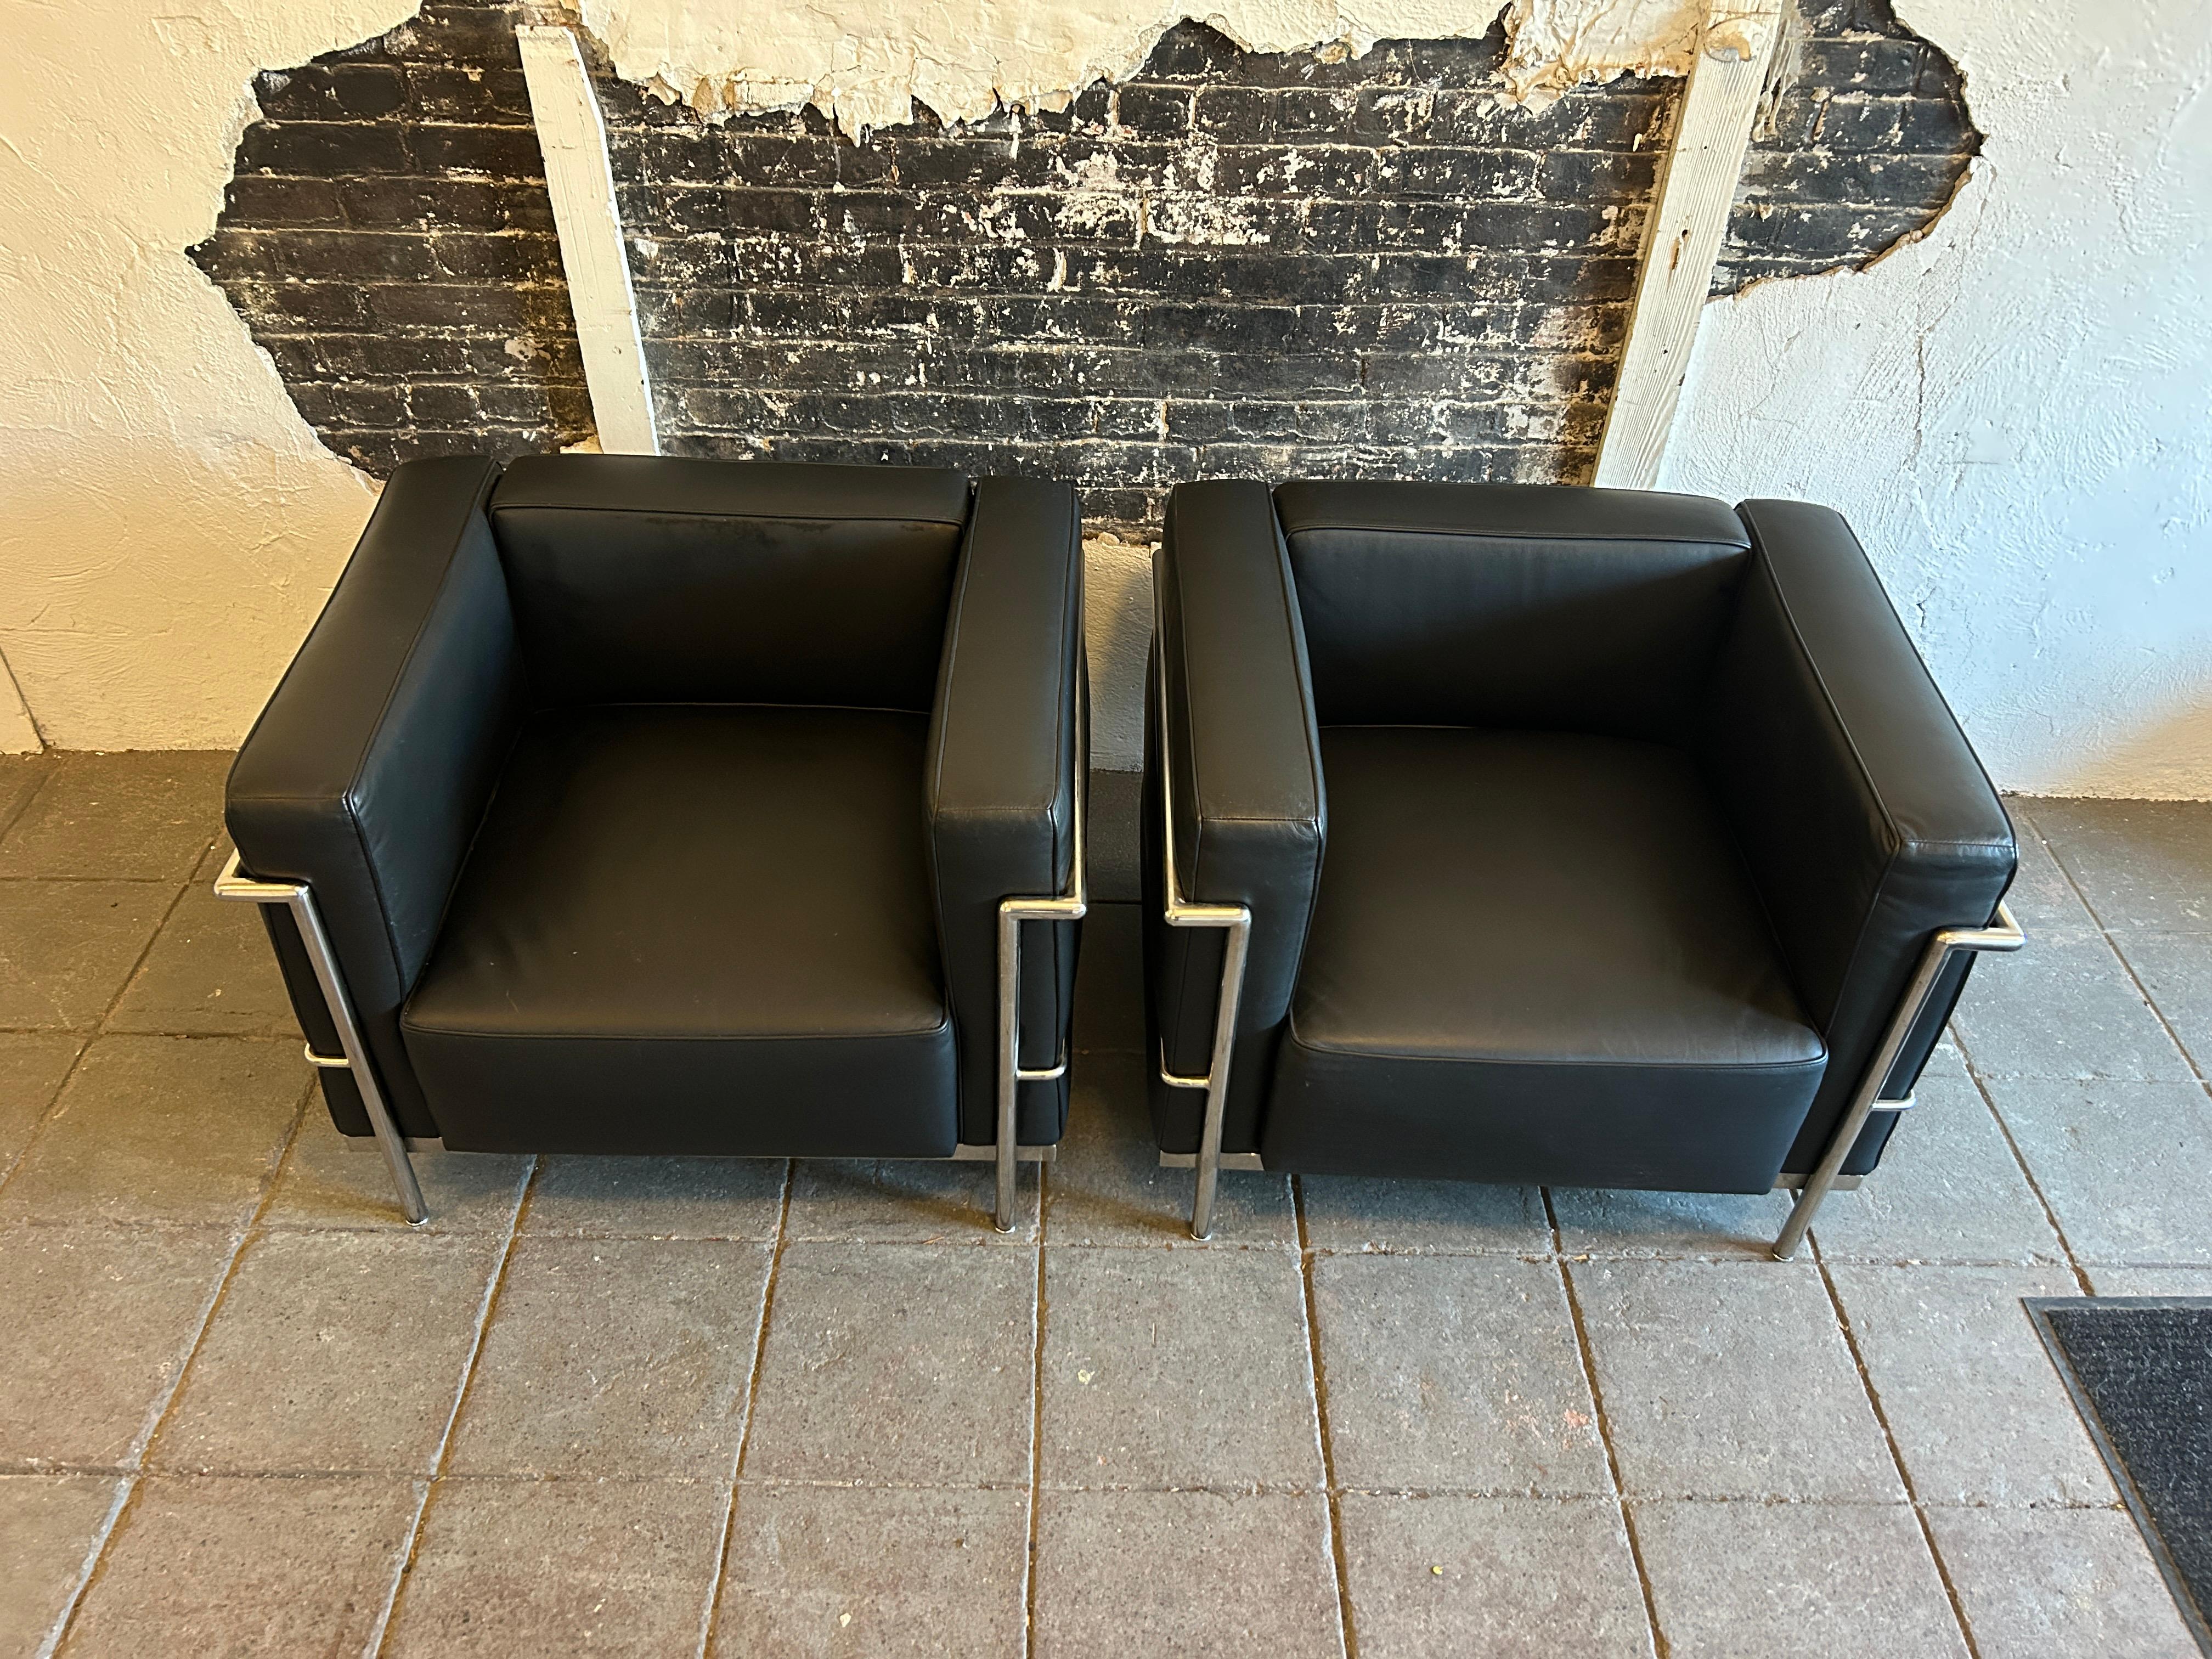 Une paire de fauteuils modernes de Le Corbusier. Modèle large LC3 en cuir souple noir. Triple cadre en acier chromé. Ne présentent que peu ou pas de signes d'utilisation. Fabriqué en Italie. Situé à Brooklyn NYC.

Vendu en tant que (1) paire de (2)